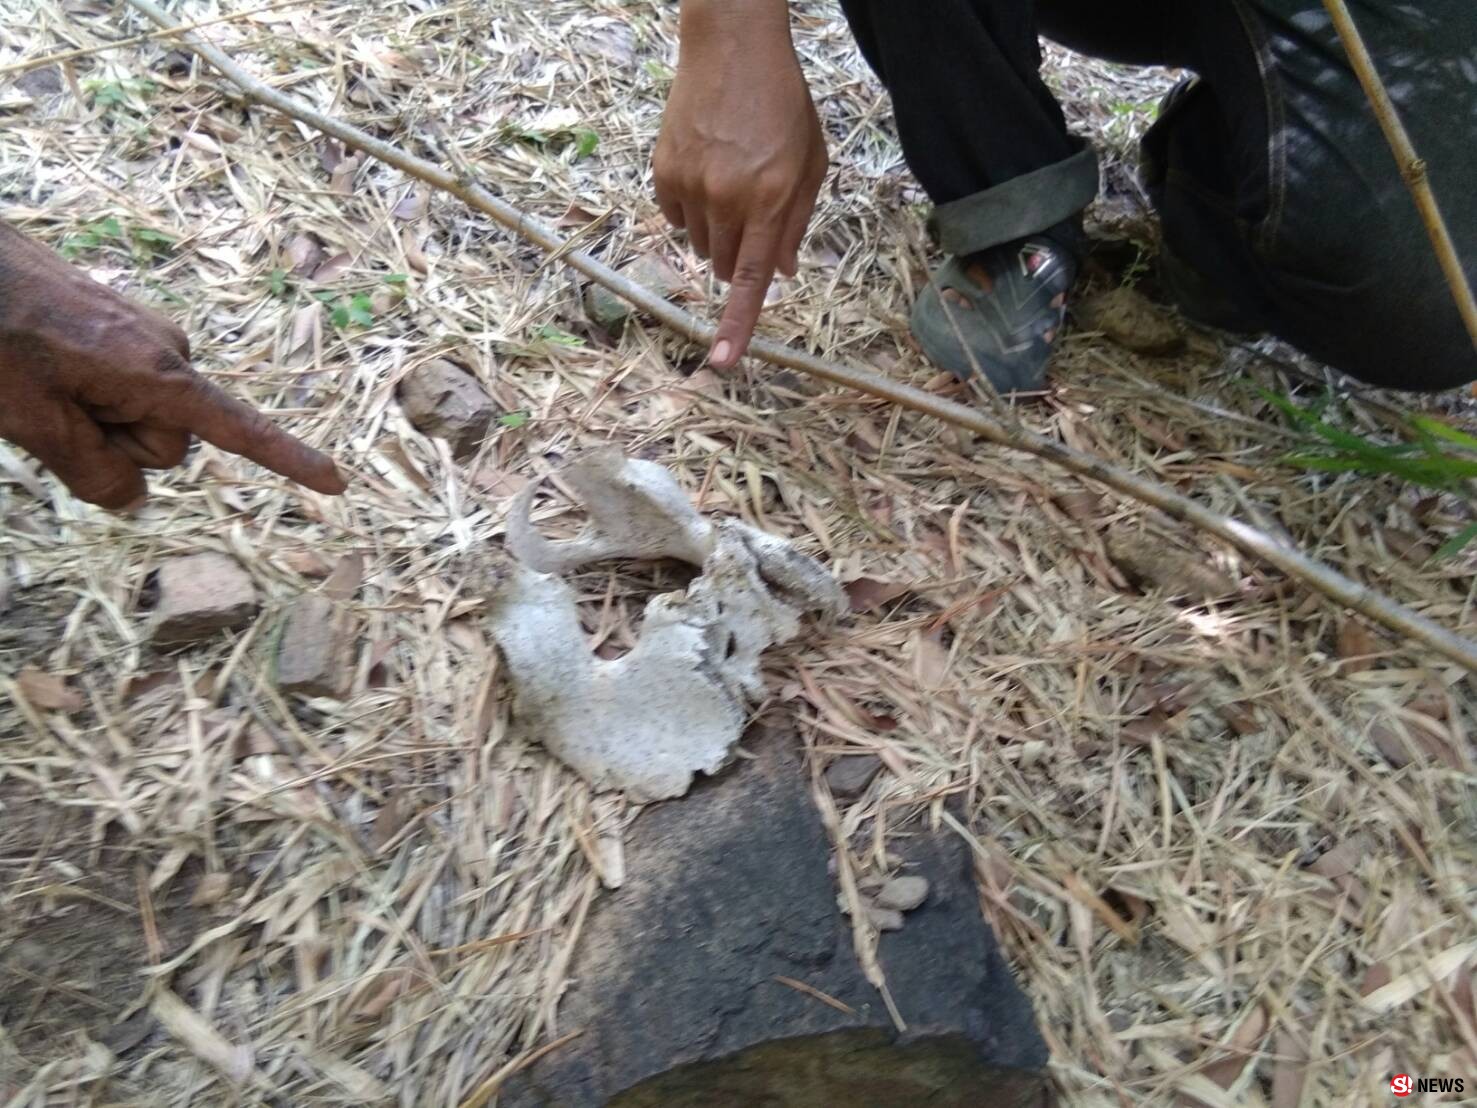 สุพรรณบุรี ชาวบ้านช็อกหาหน่อไม้เจอโครงกระดูกมนุษย์บนเขาใหญ่